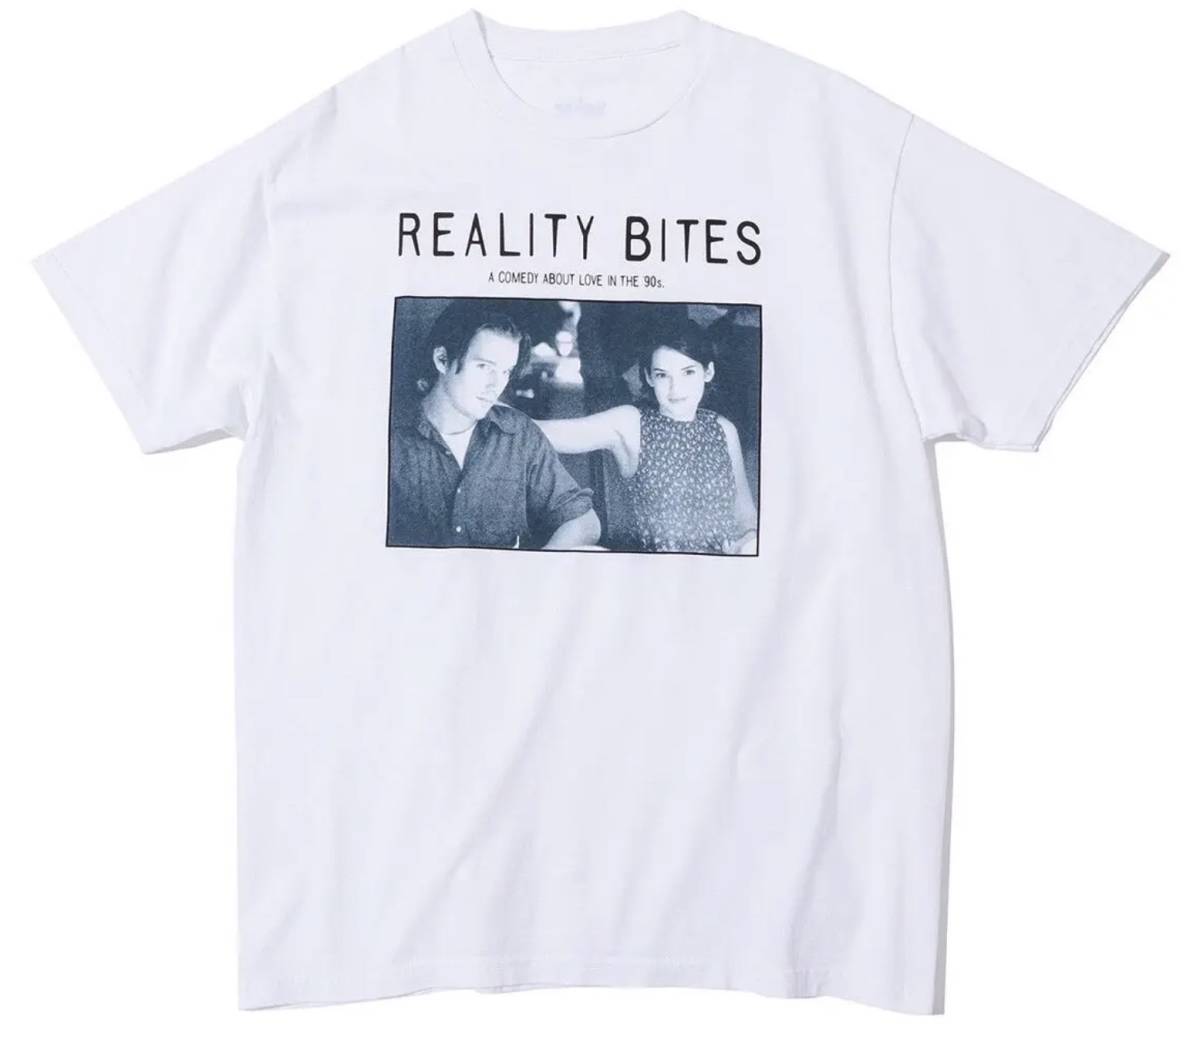 Lサイズ 送料込み 新品即決 Reality Bites × weber T shirt scene 2 リアリティバイツ Tシャツ TEE ホワイト  90's 映画 ウィノナライダー